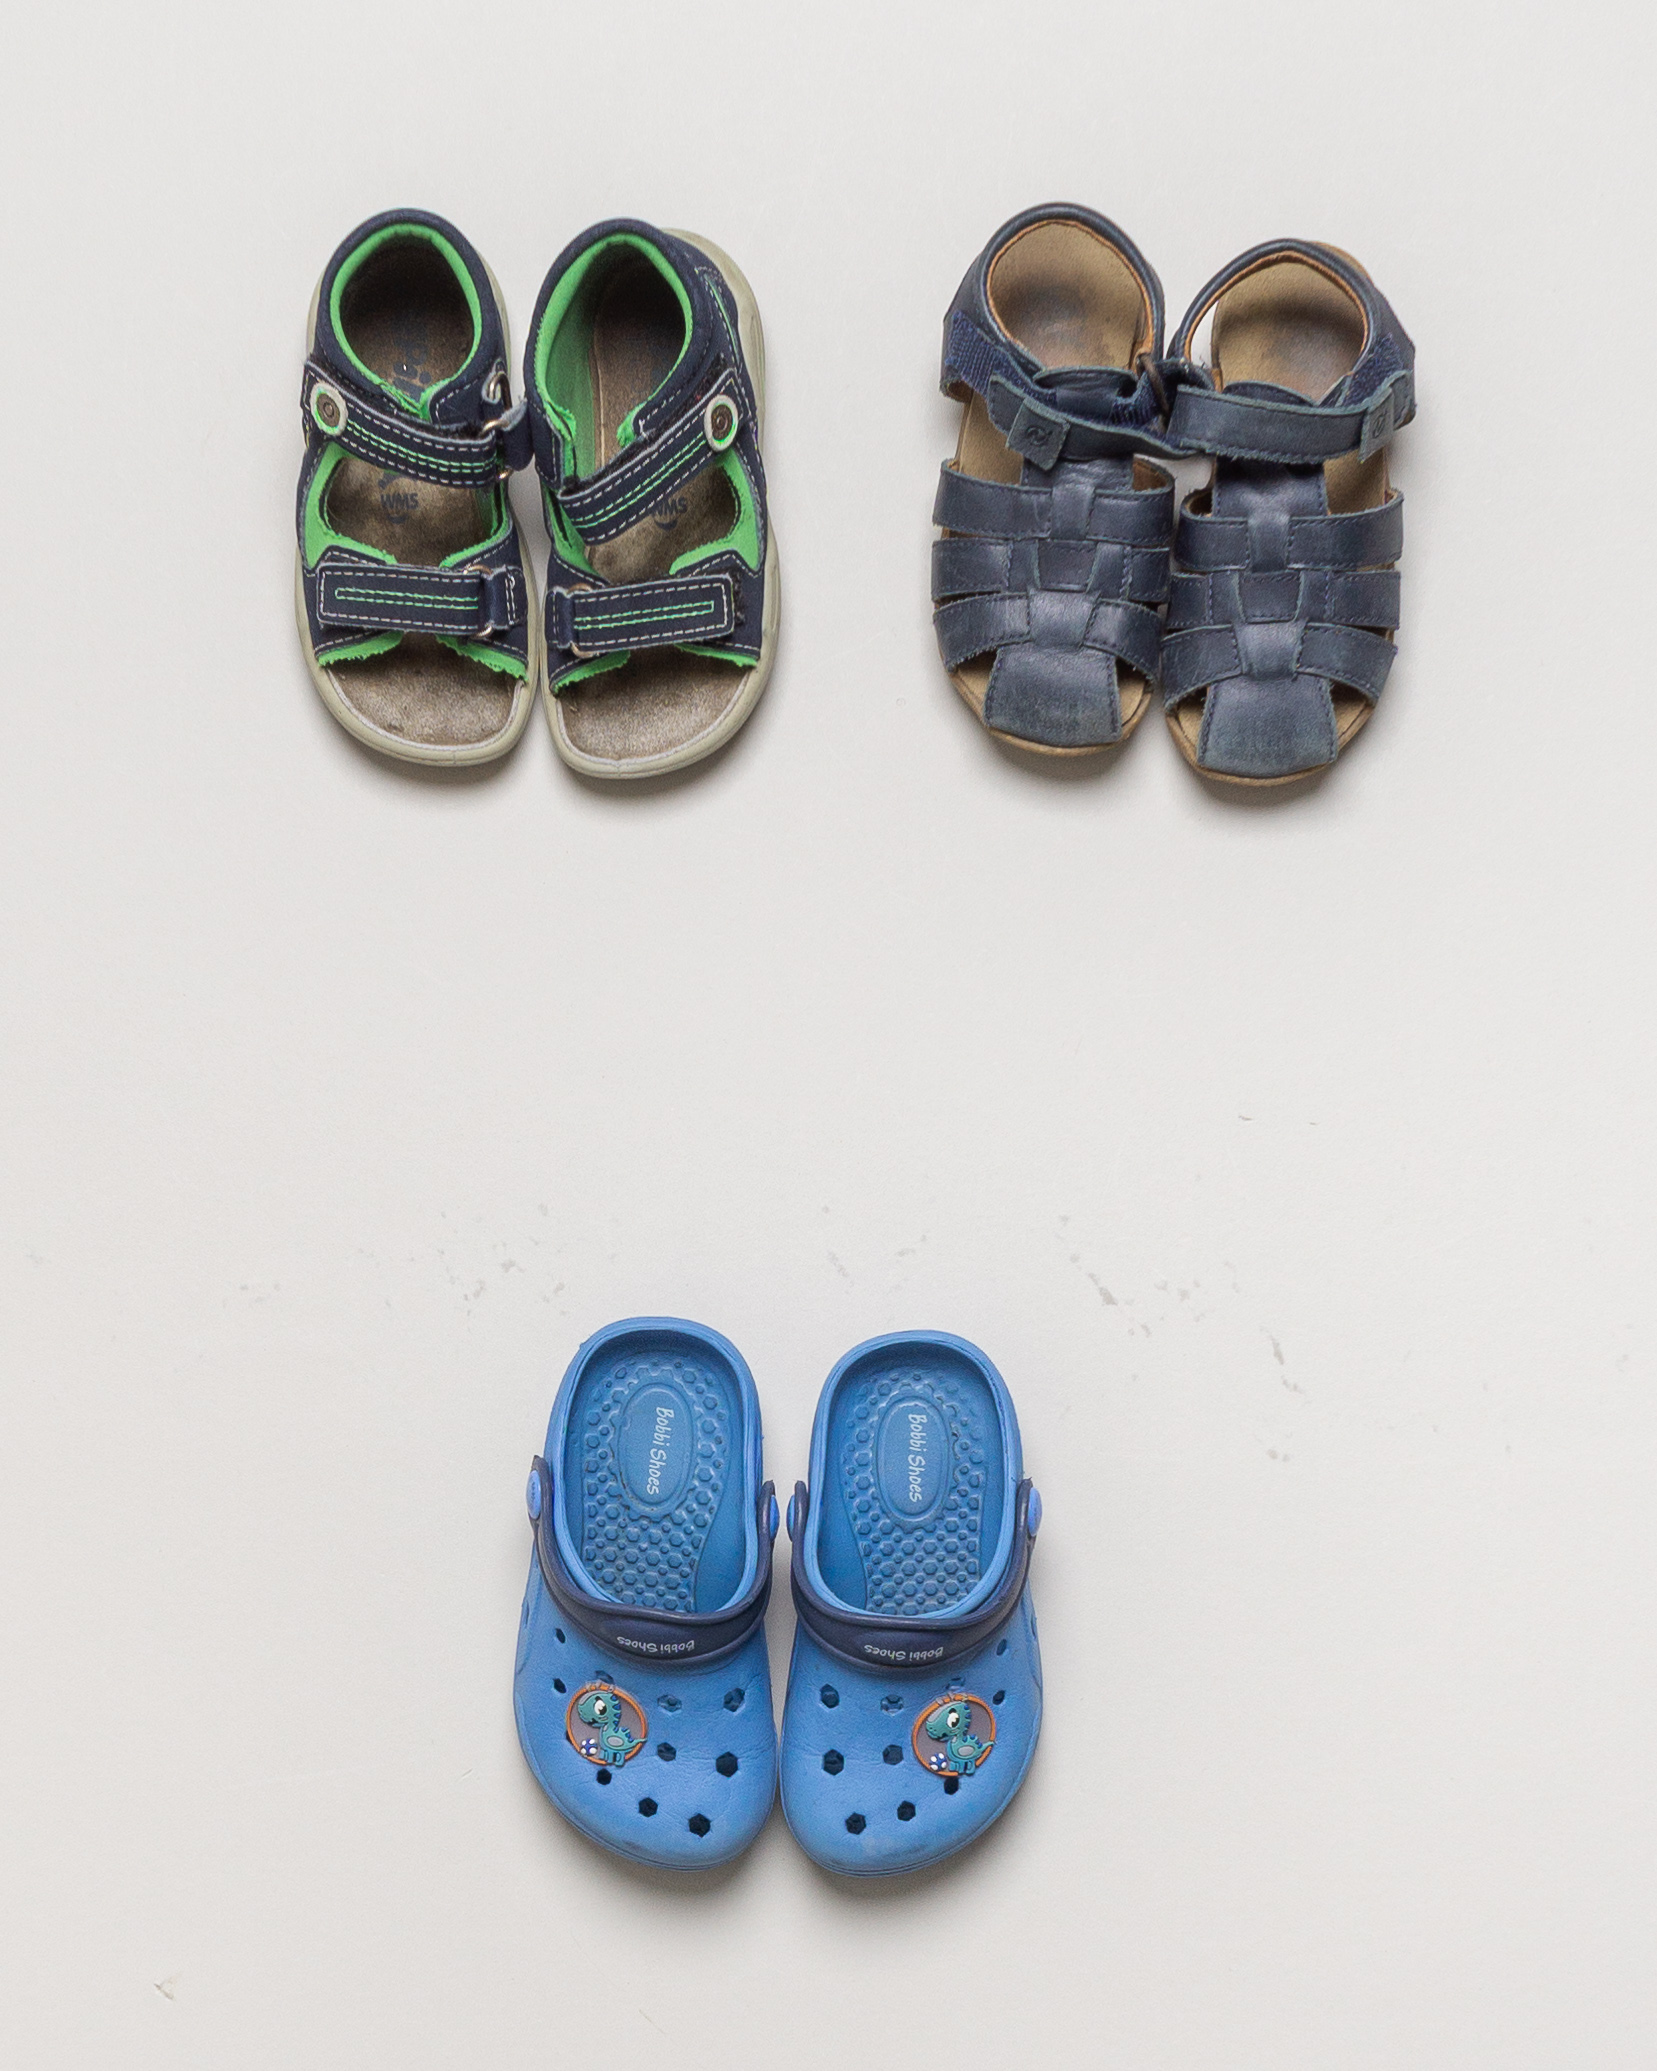 1 Paar Schuhe Gr. 22 – Sandalen Wasserschuhe Leder Blau Grün Crocs